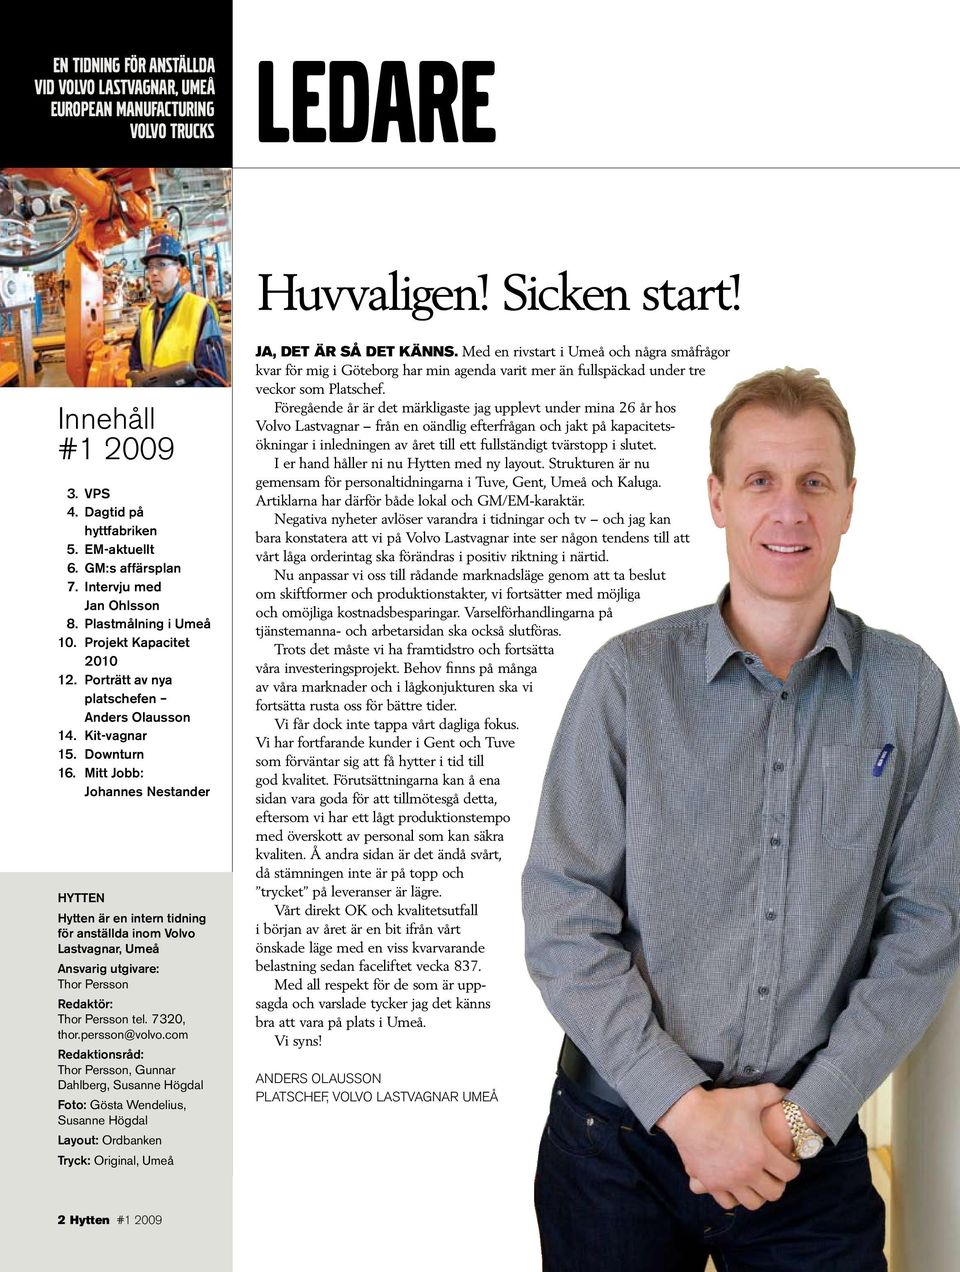 Mitt Jobb: Johannes Nestander HYTTEN Hytten är en intern tidning för anställda inom Volvo Lastvagnar, Umeå Ansvarig utgivare: Thor Persson Redaktör: Thor Persson tel. 7320, thor.persson@volvo.